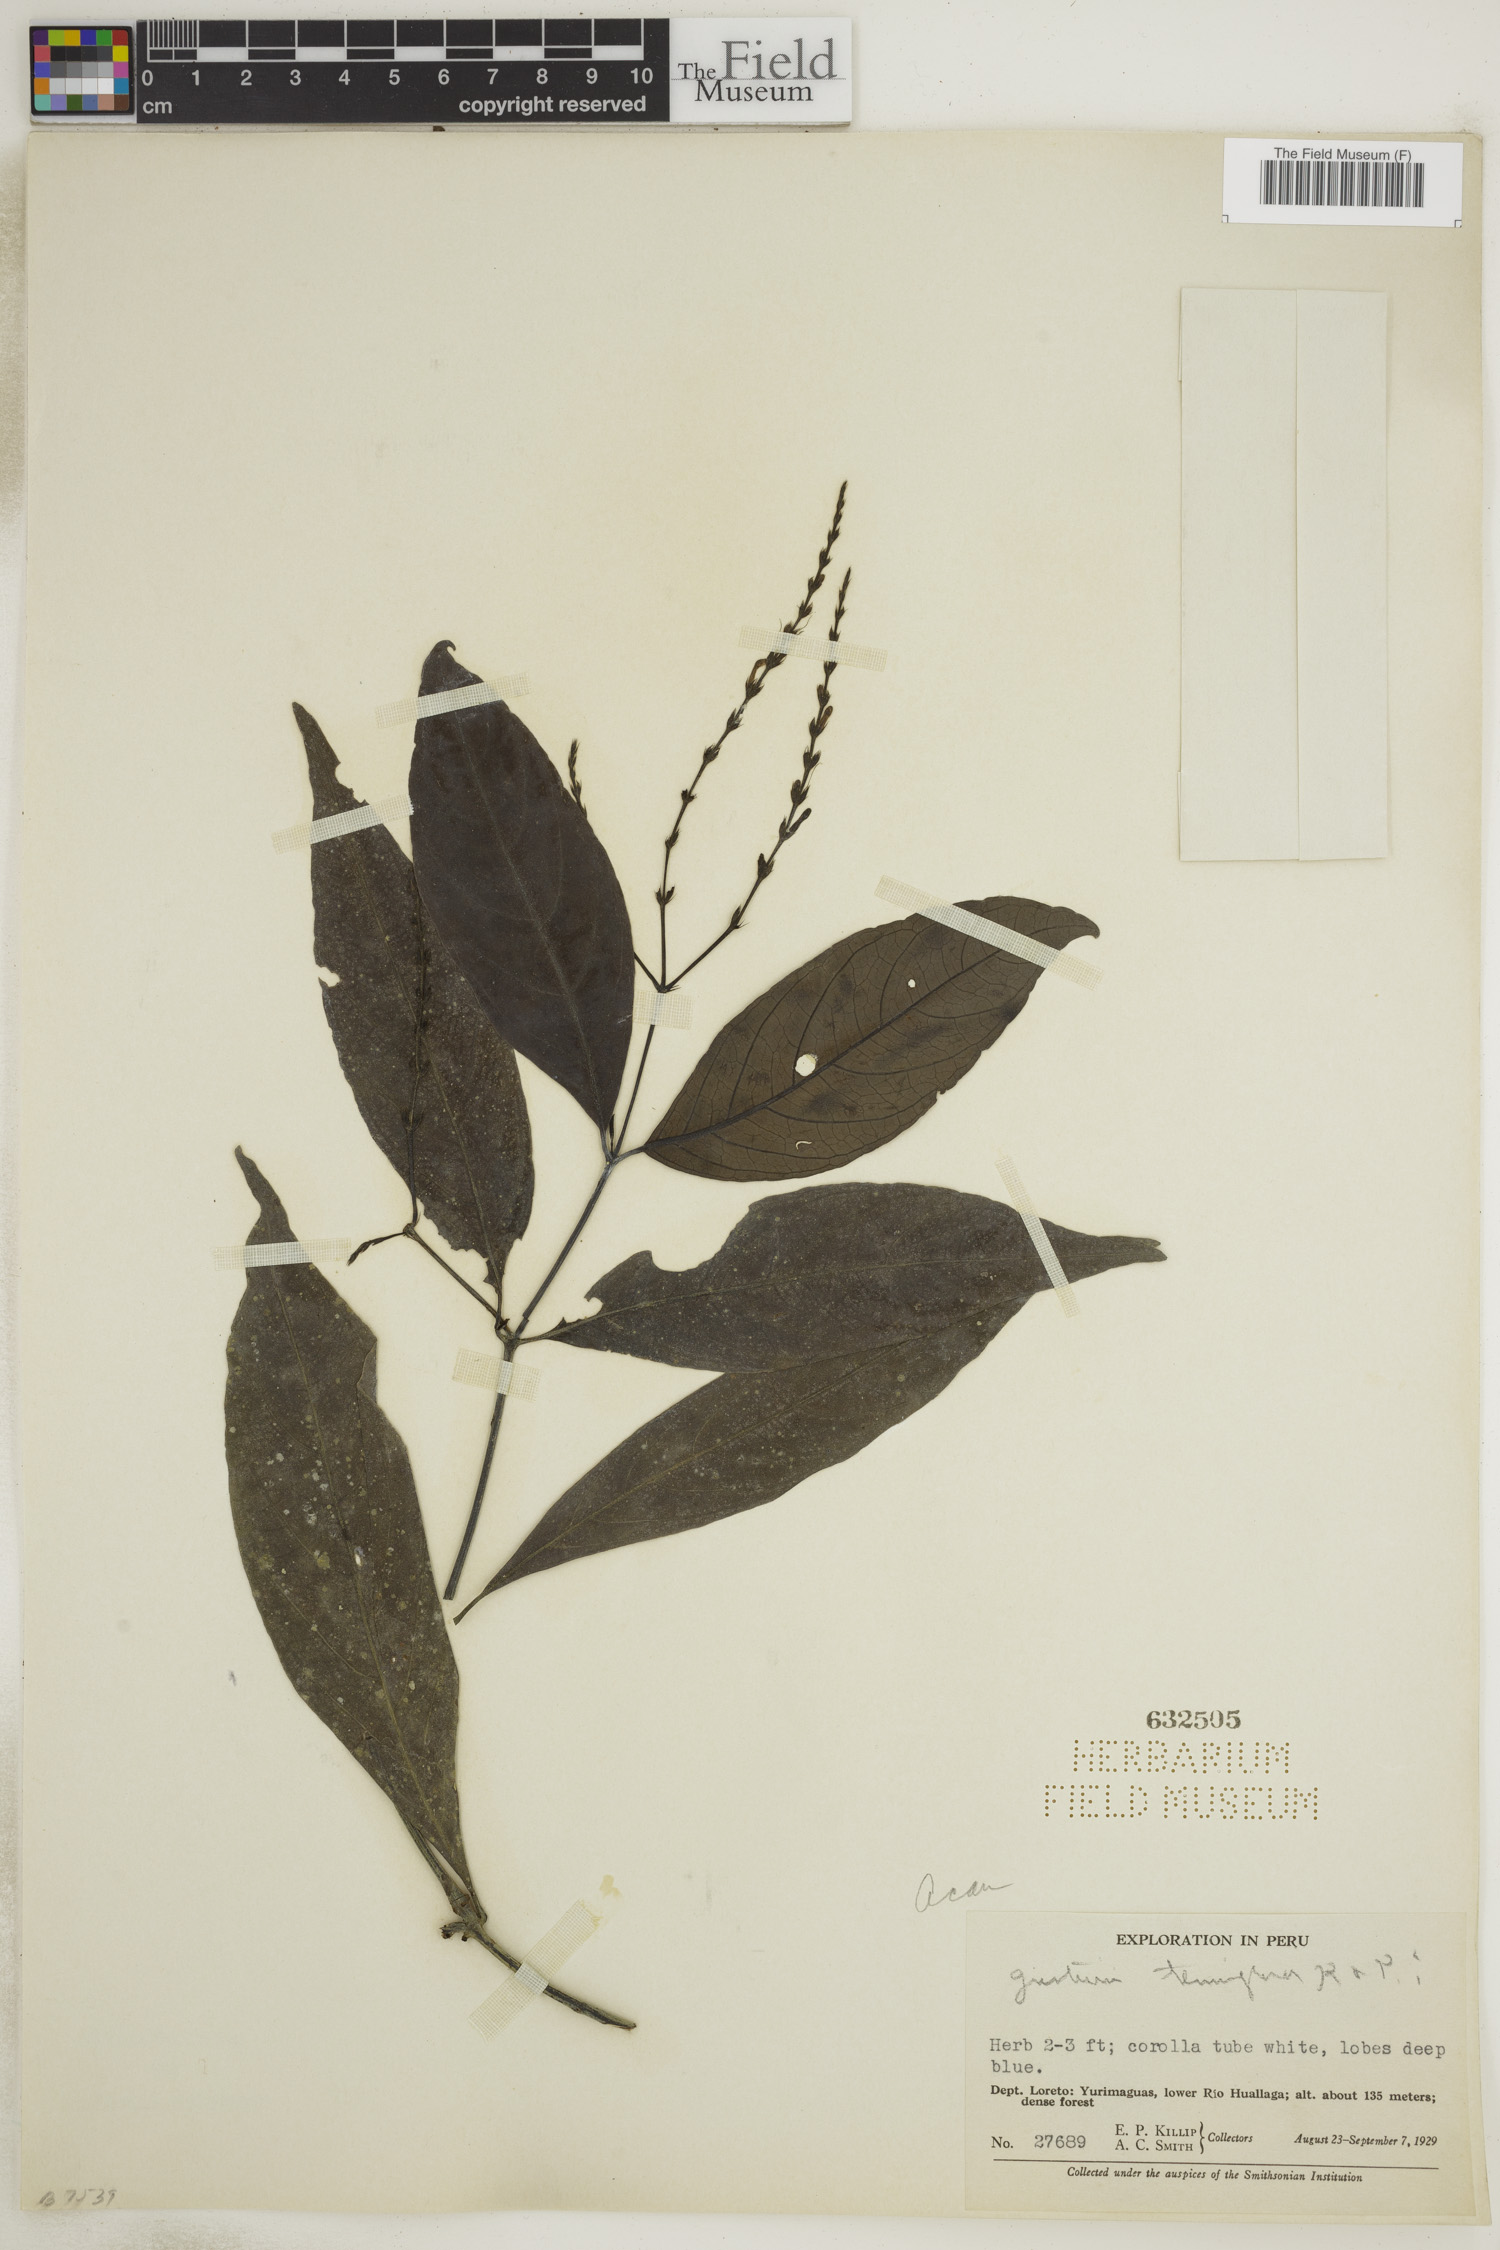 Justicia tenuiflora image